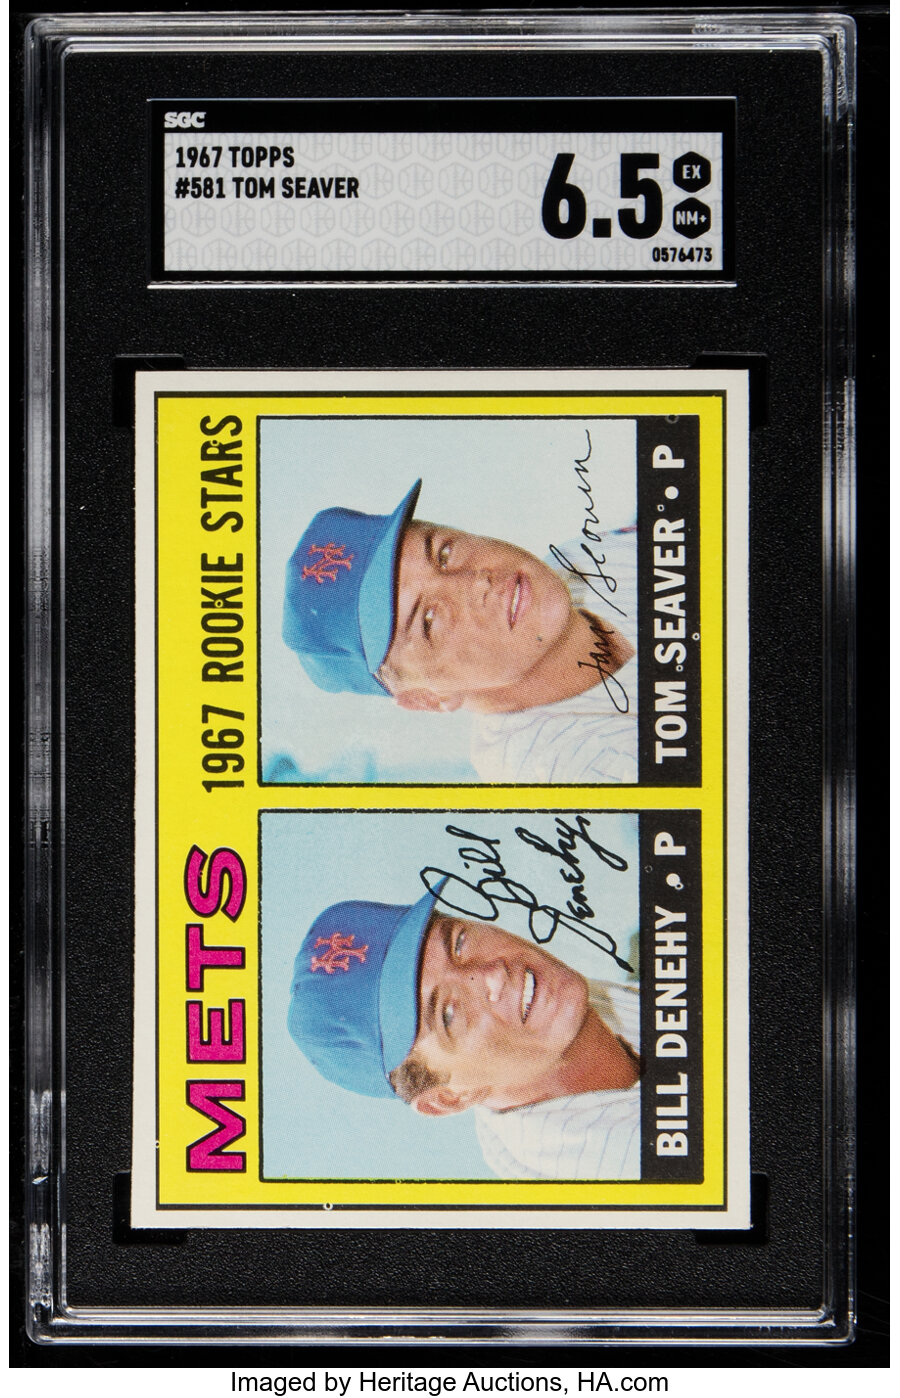 1967 Topps Tom Seaver - Mets Rookies #581 SGC EX/NM+ 6.5